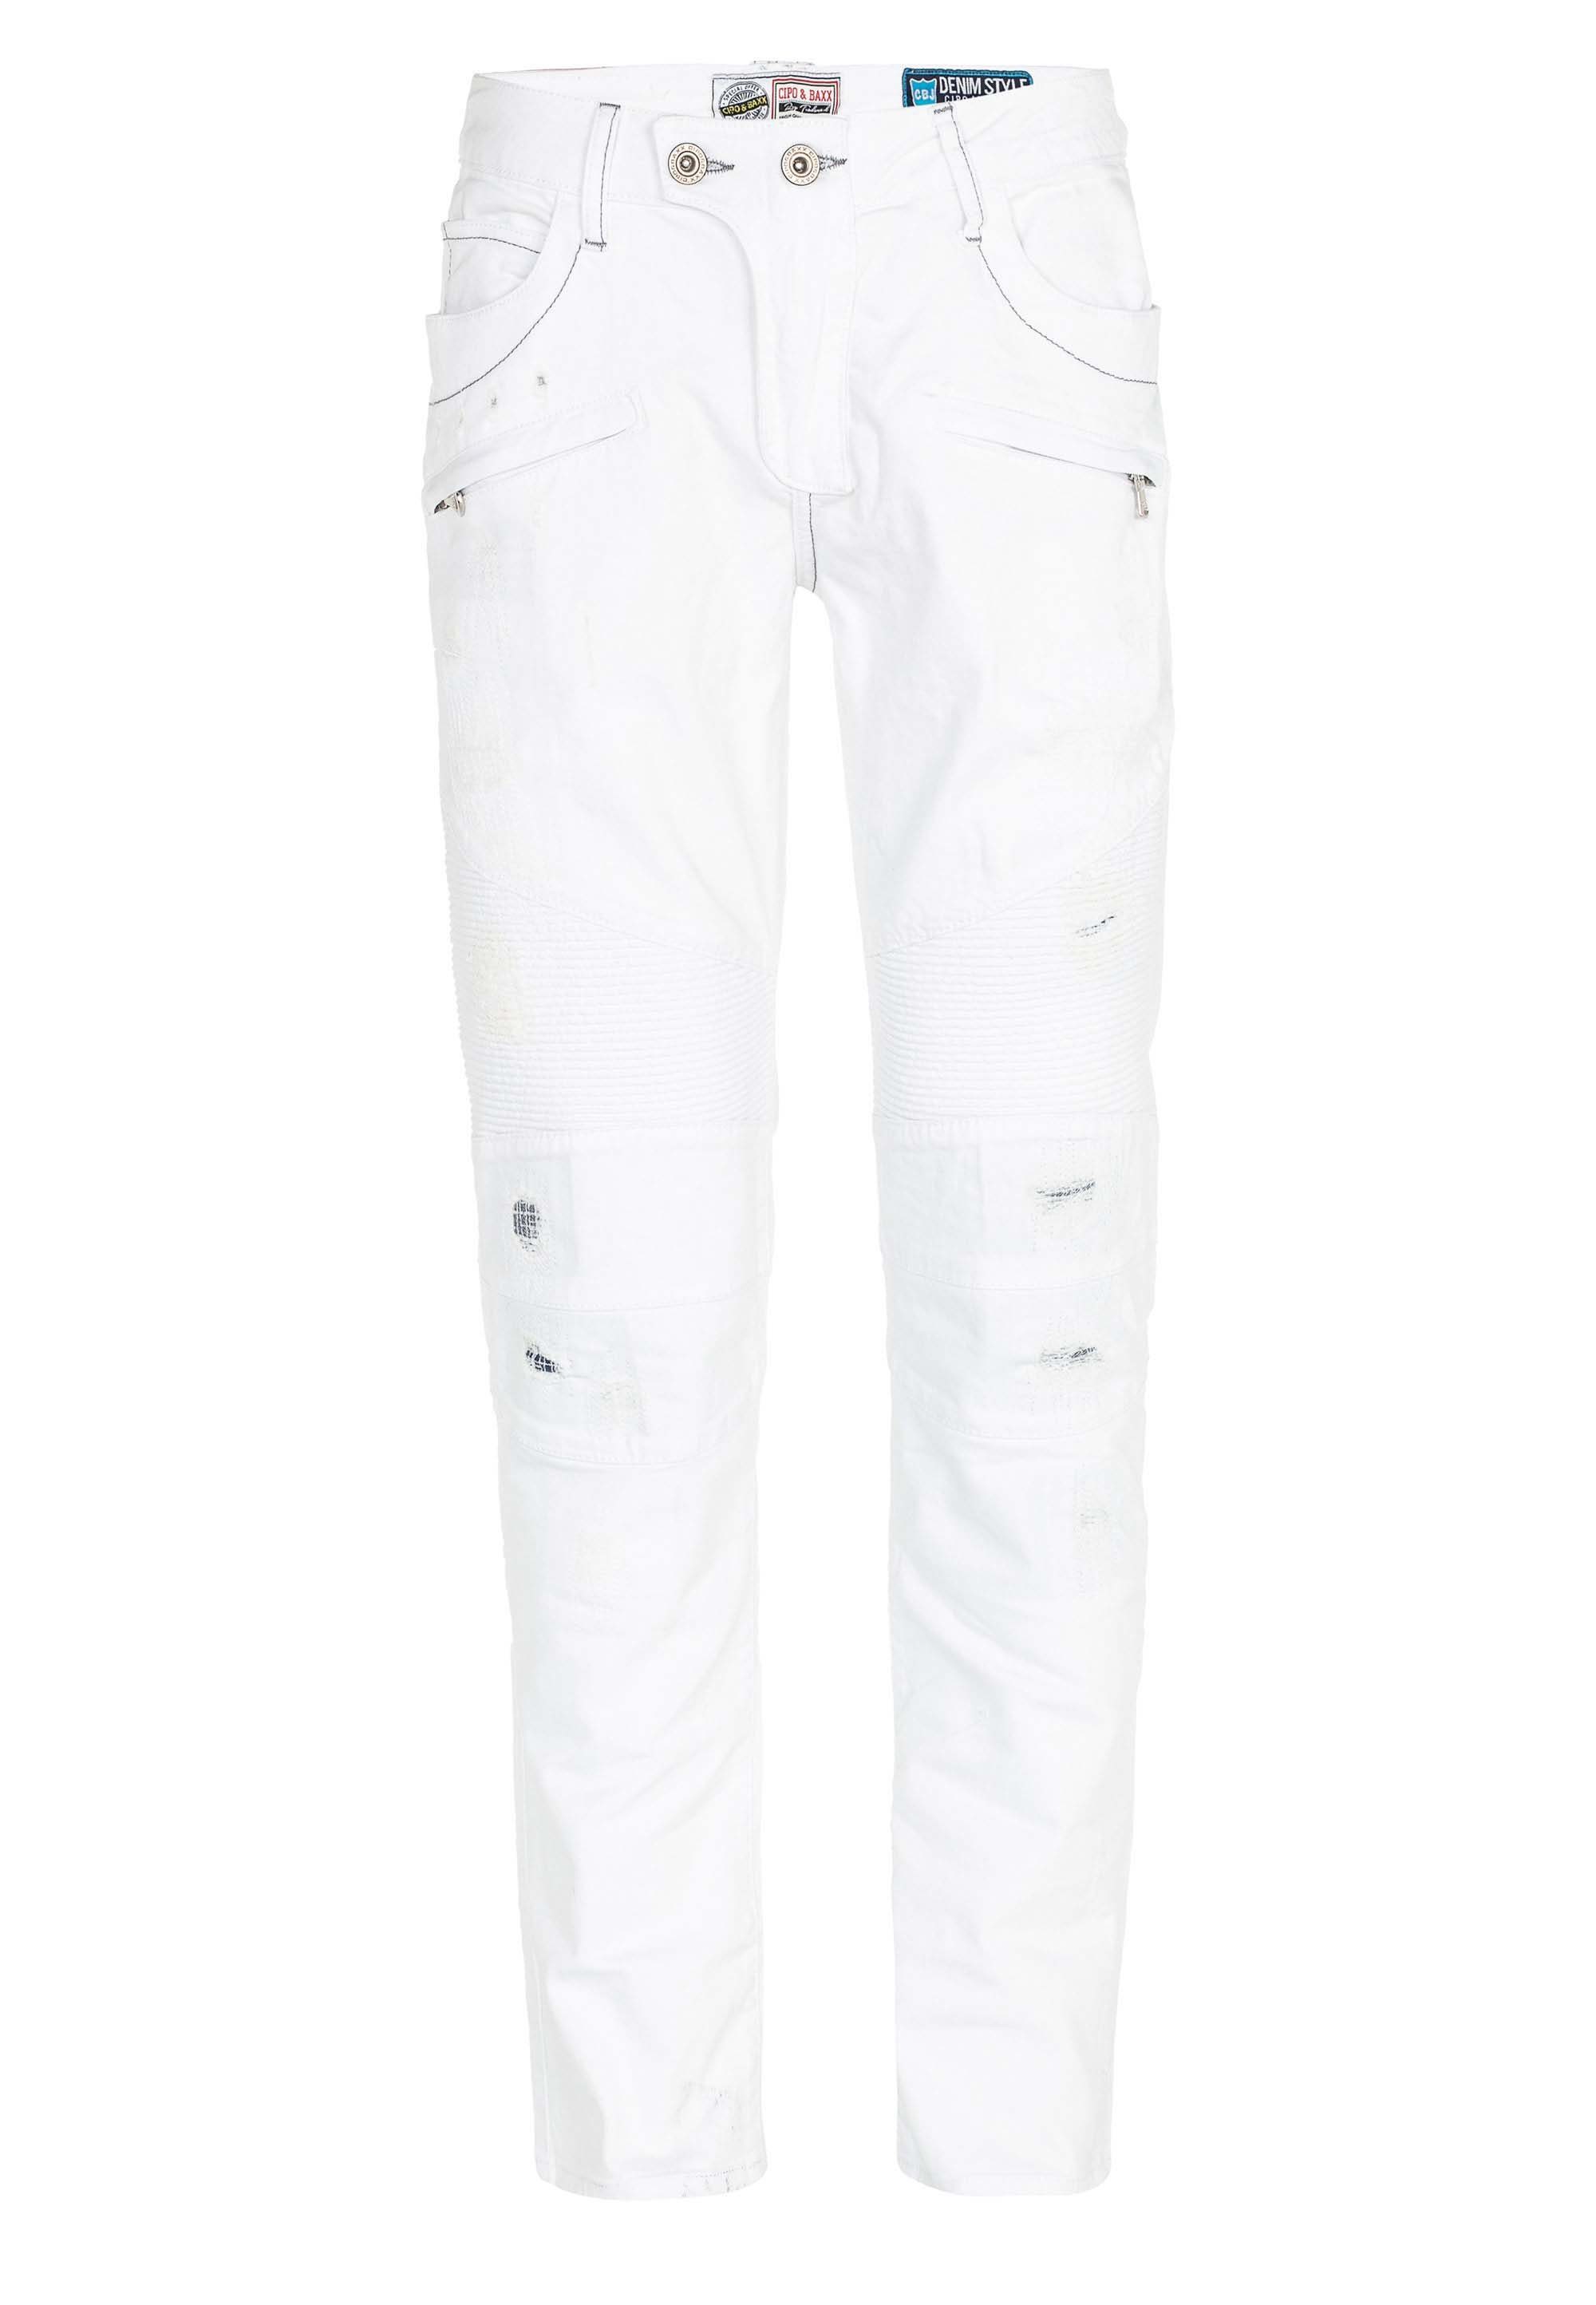 & Reißverschlusstaschen stylishen Baxx Slim-fit-Jeans mit Cipo